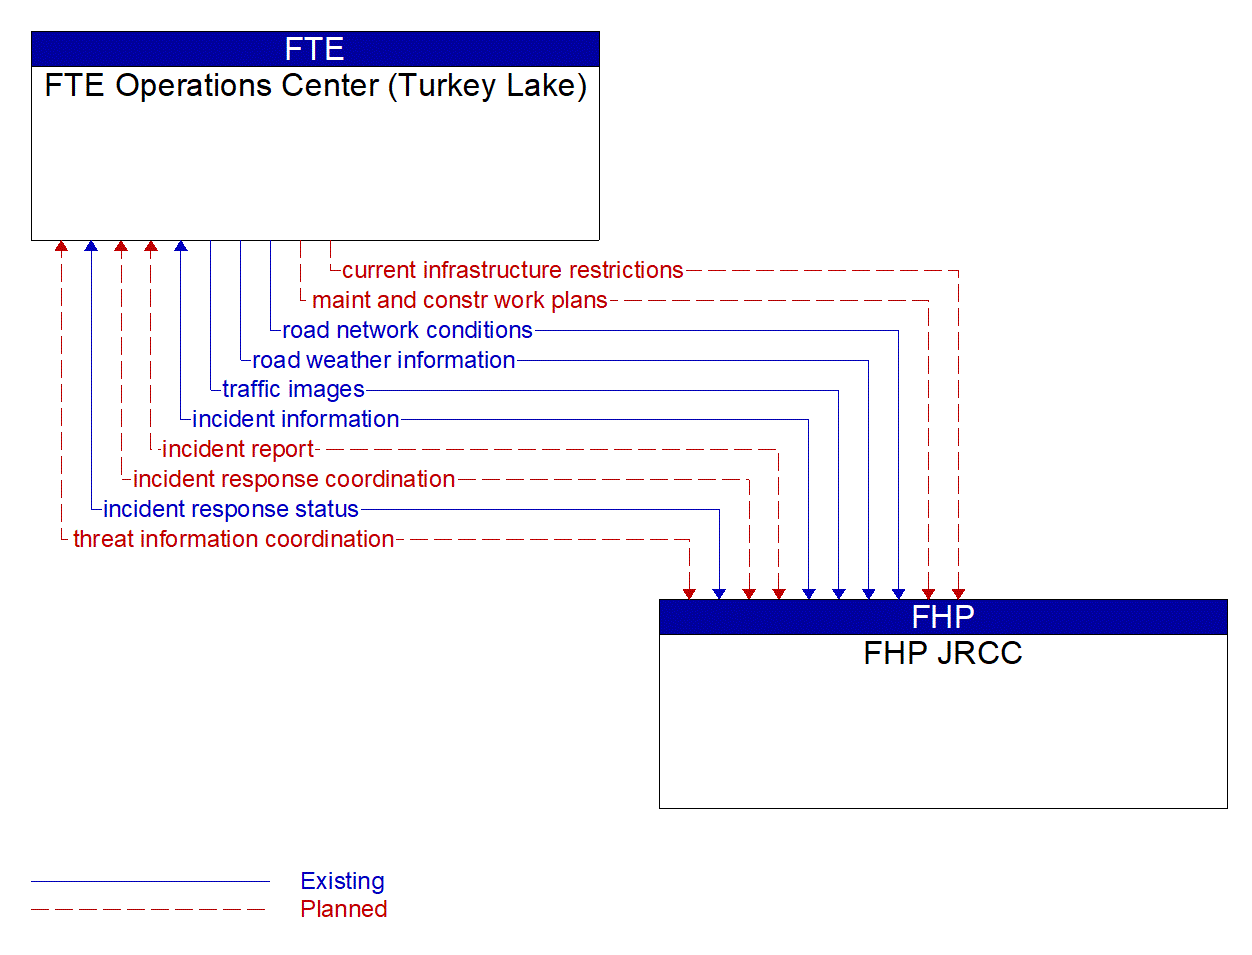 Architecture Flow Diagram: FHP JRCC <--> FTE Operations Center (Turkey Lake)